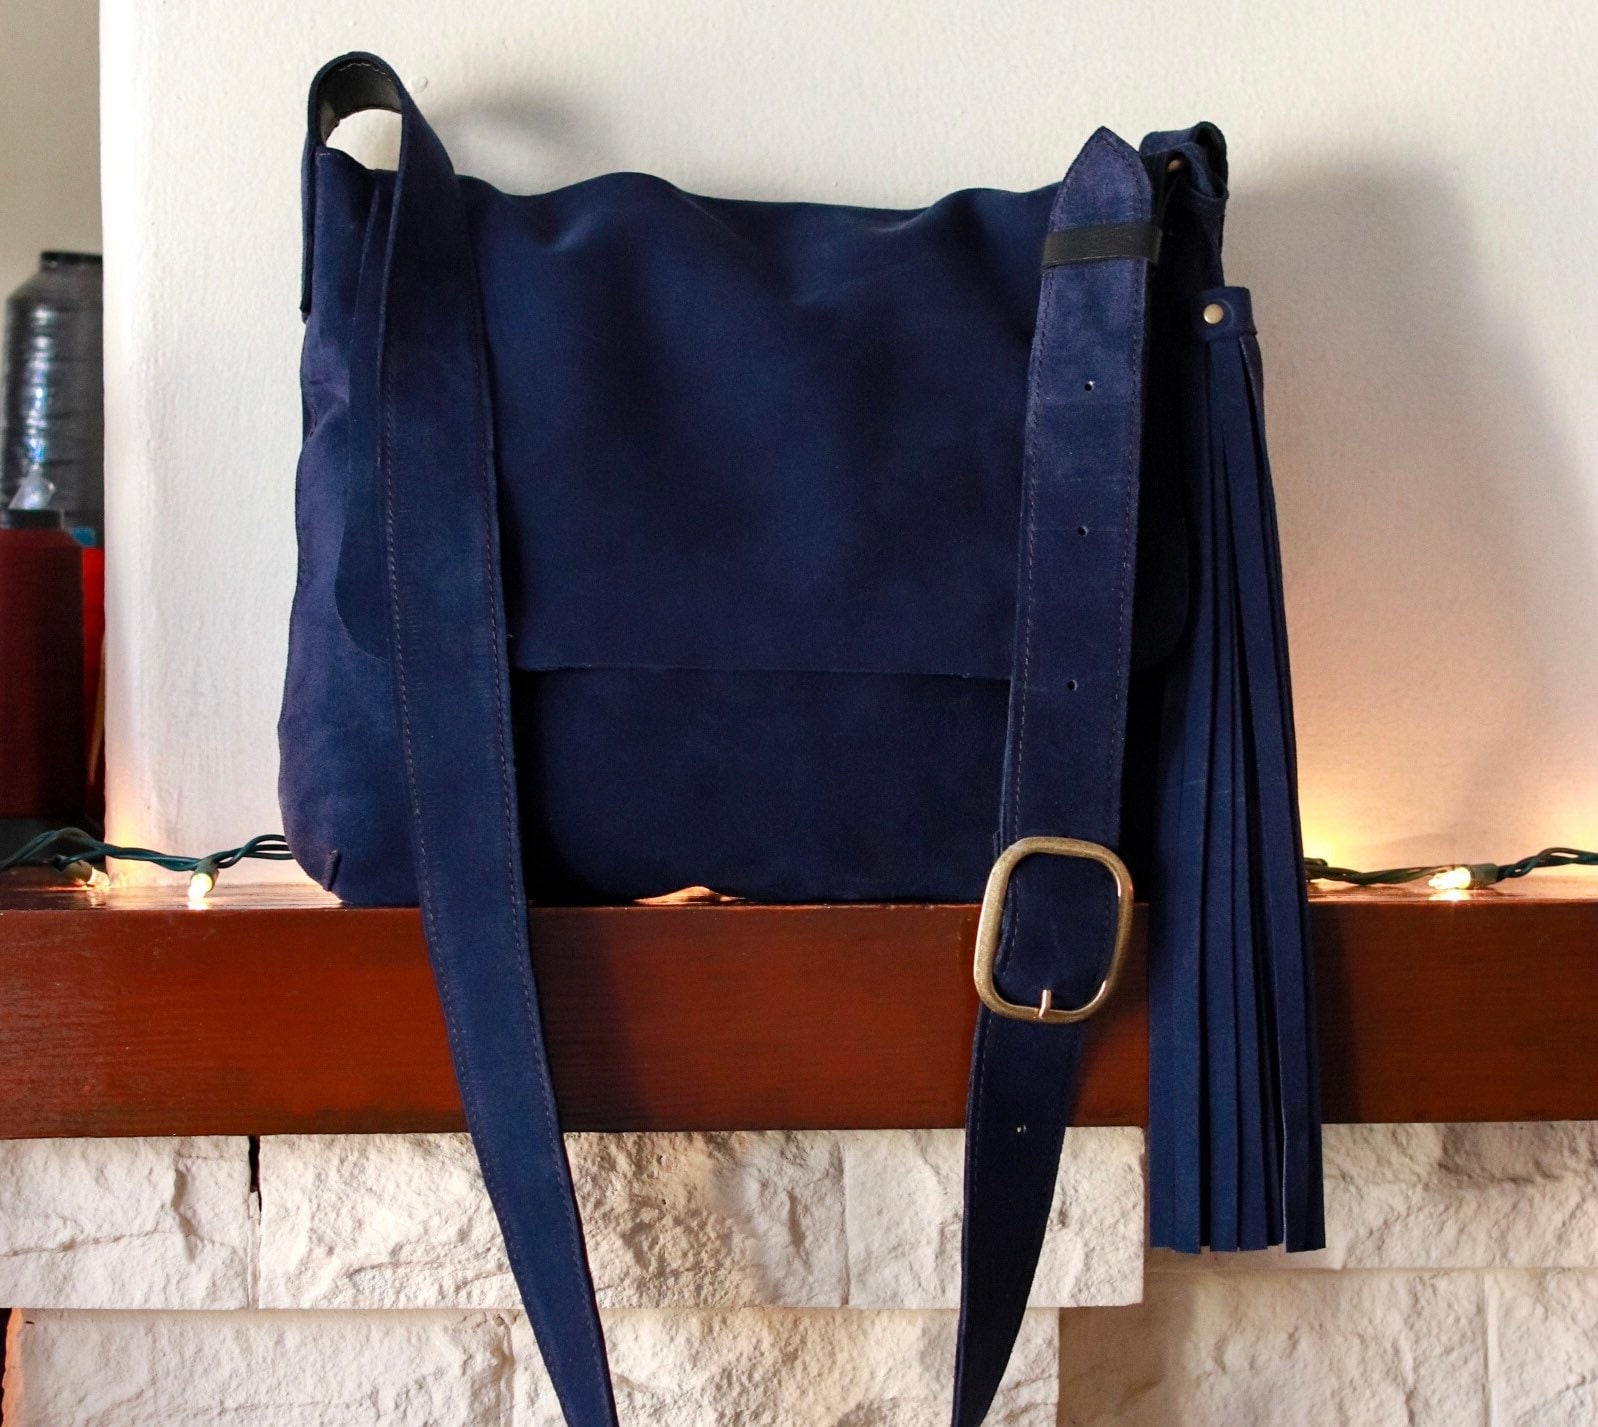 Fauré Le Page - Hands on 17 Shoulder Bag - Paris Blue Scale Canvas & Navy Leather